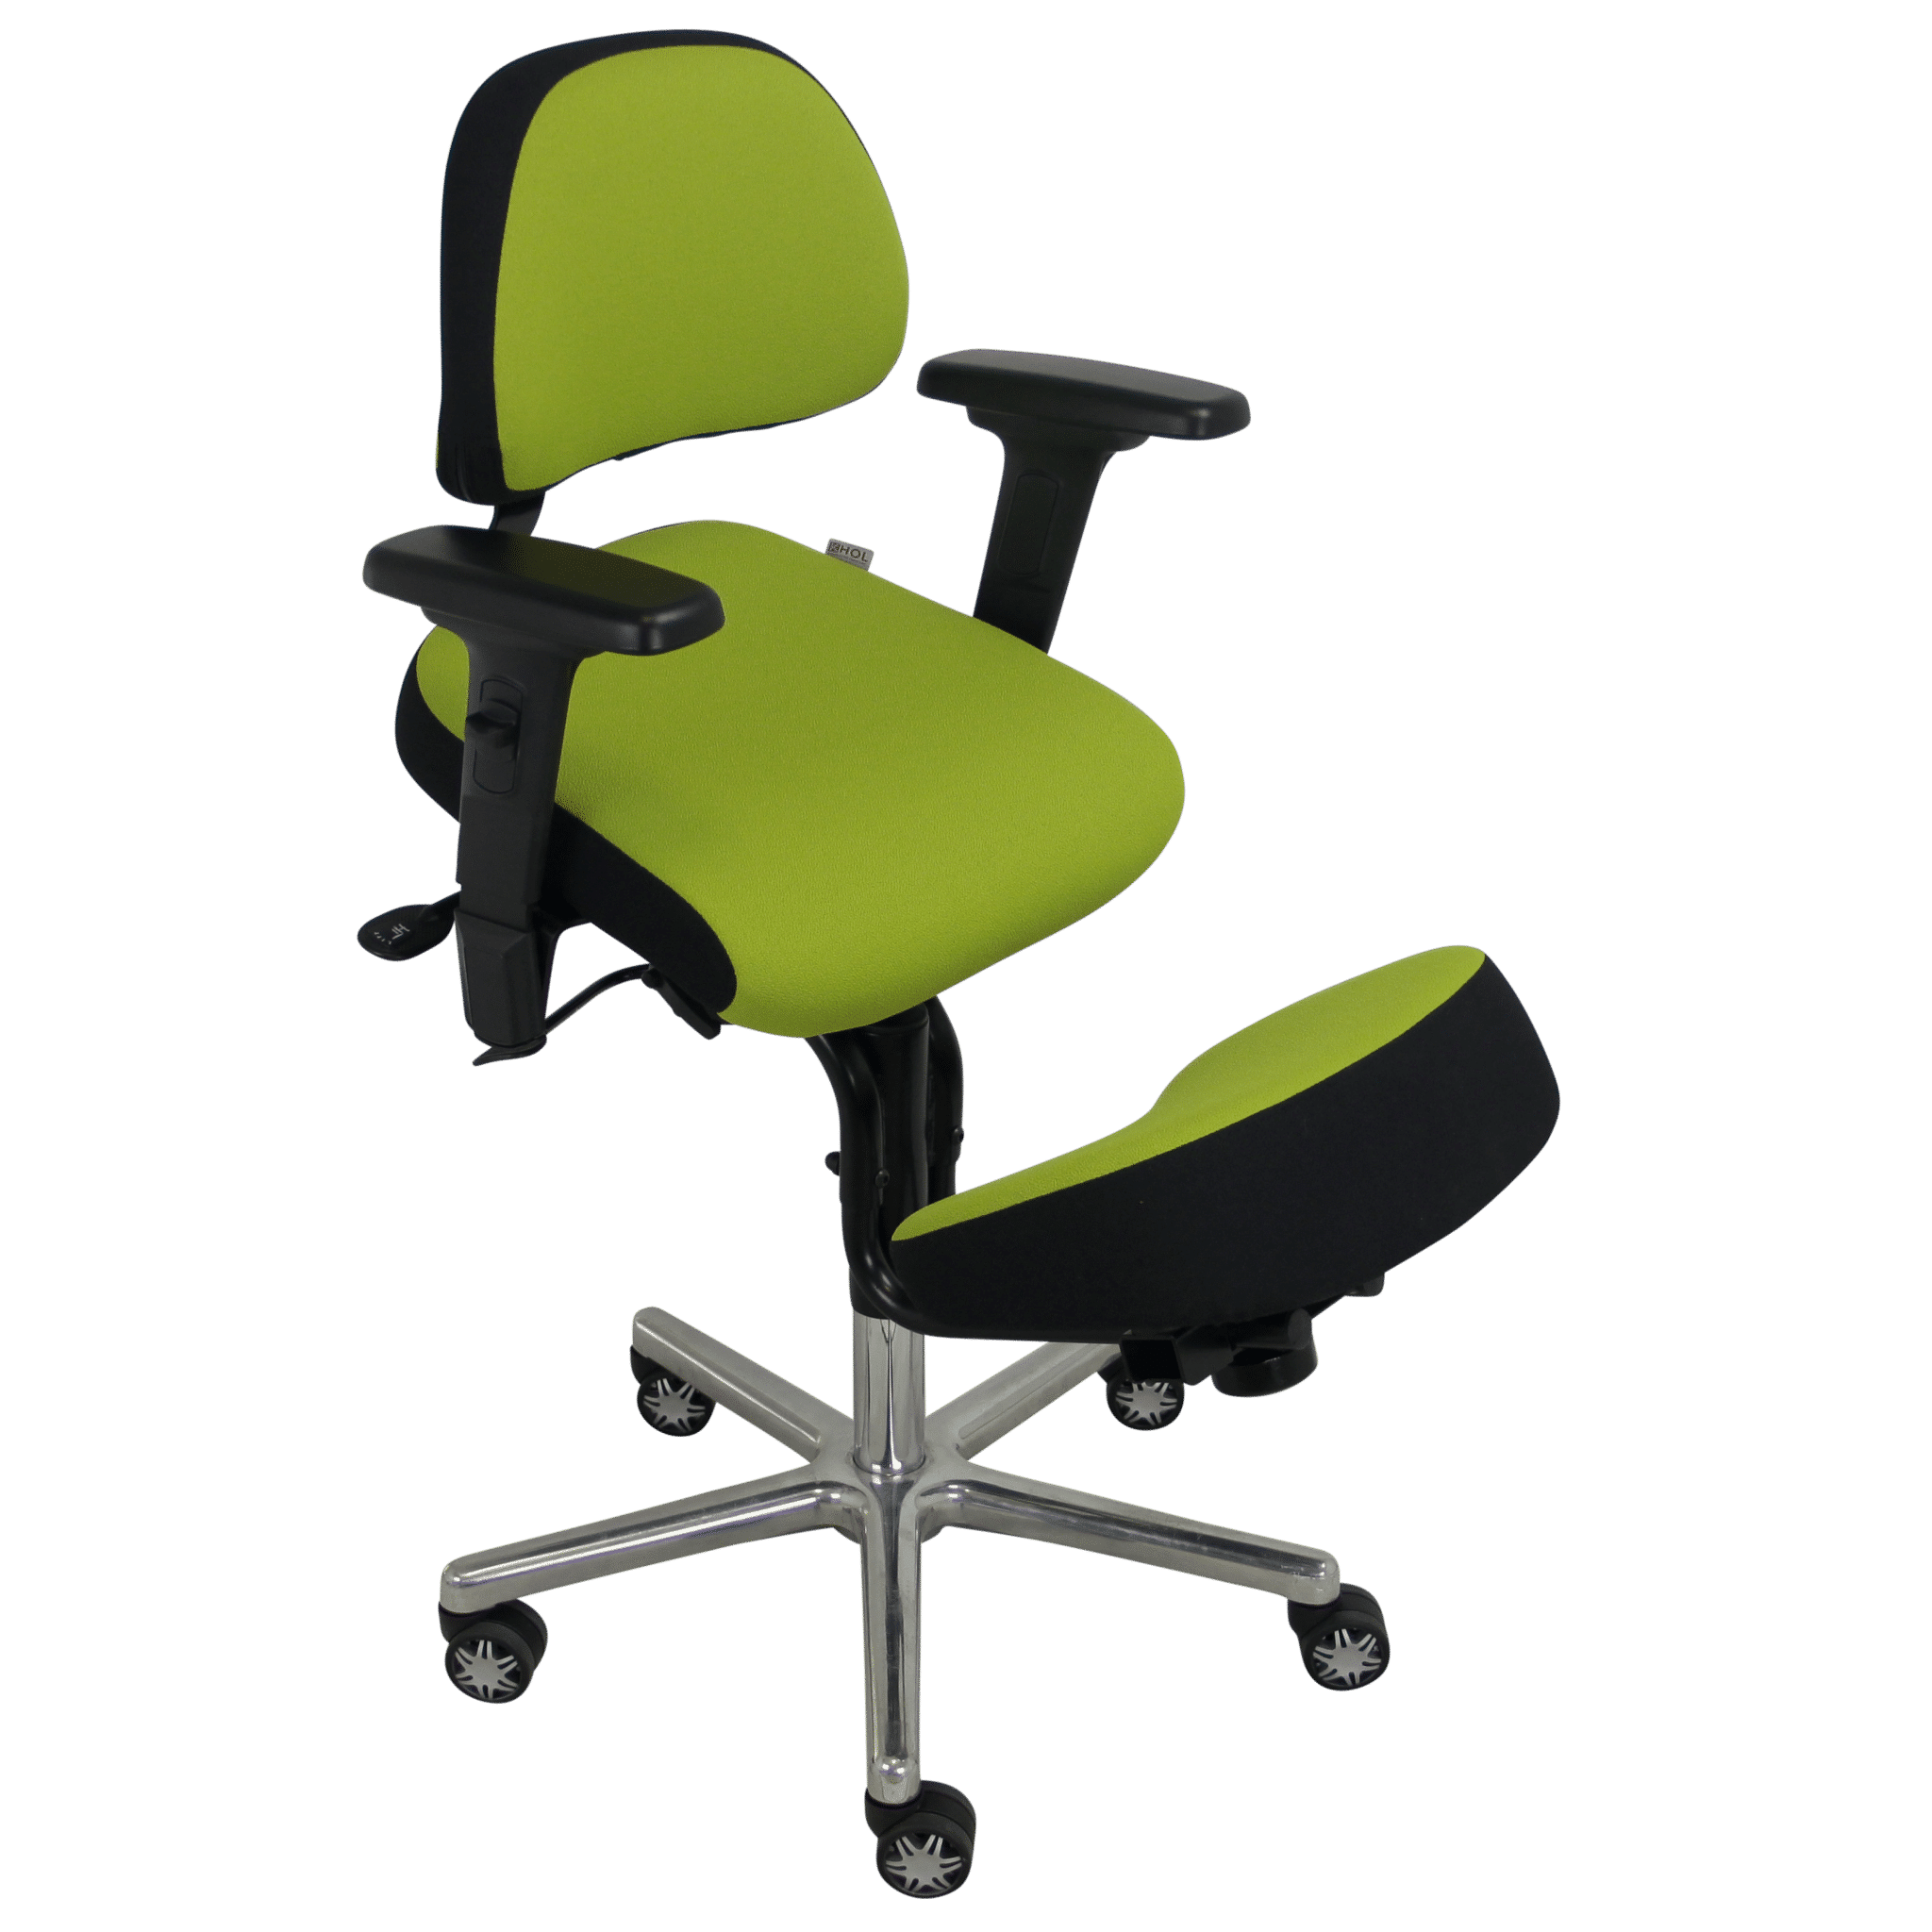 siège ergonomique : fonctionnement du siège assis genoux